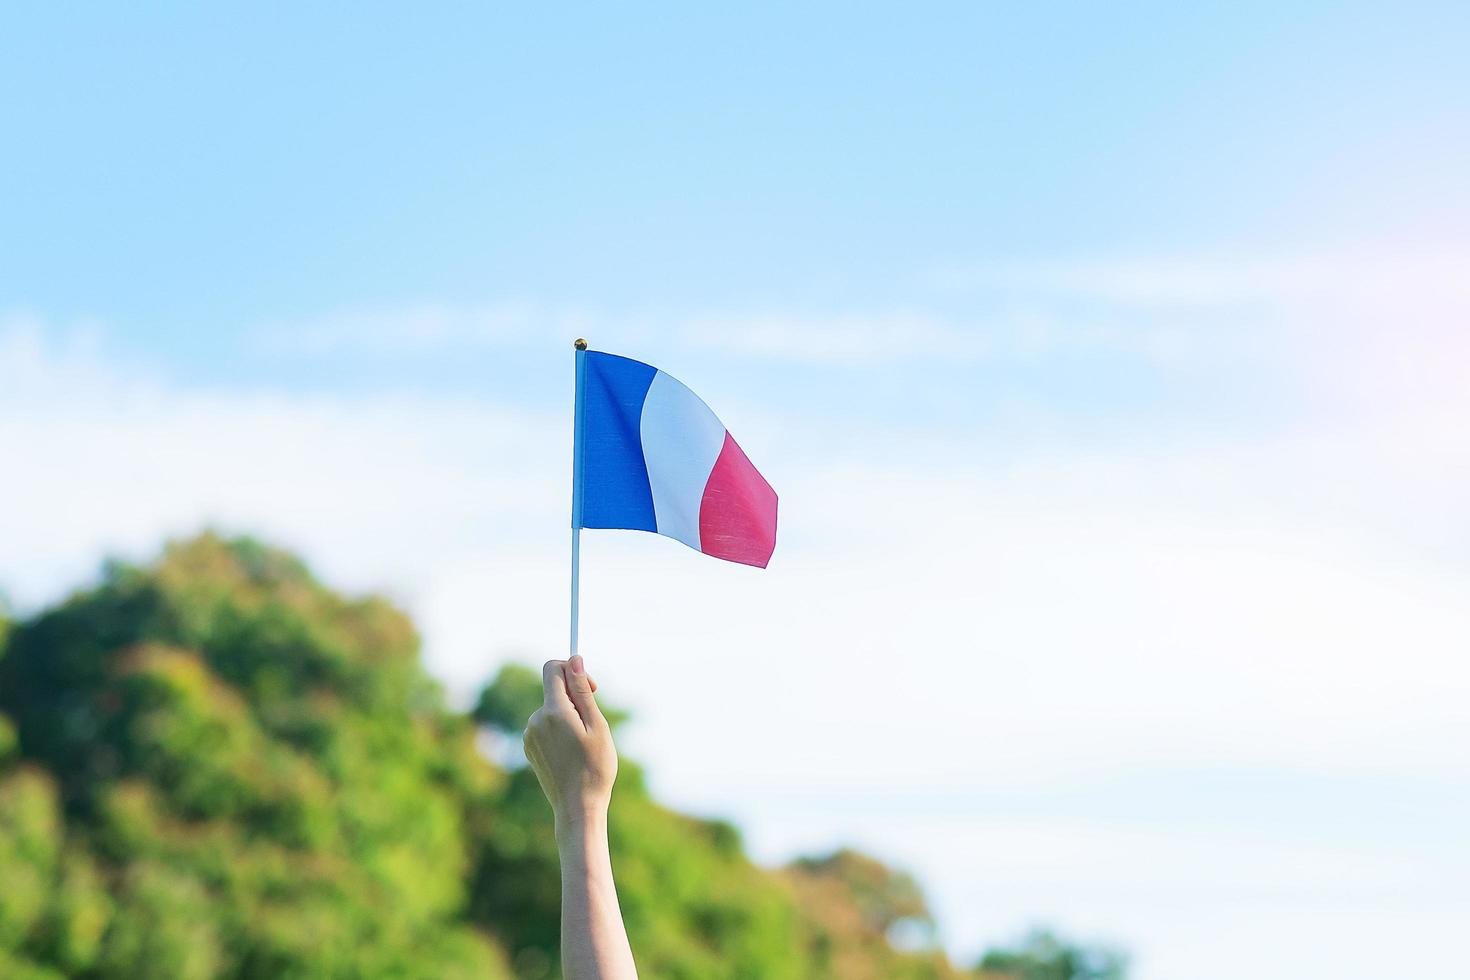 Hand, die Frankreich-Flagge auf Hintergrund des blauen Himmels hält. feiertag des französischen nationaltages, bastille-tag und fröhliche feierkonzepte foto